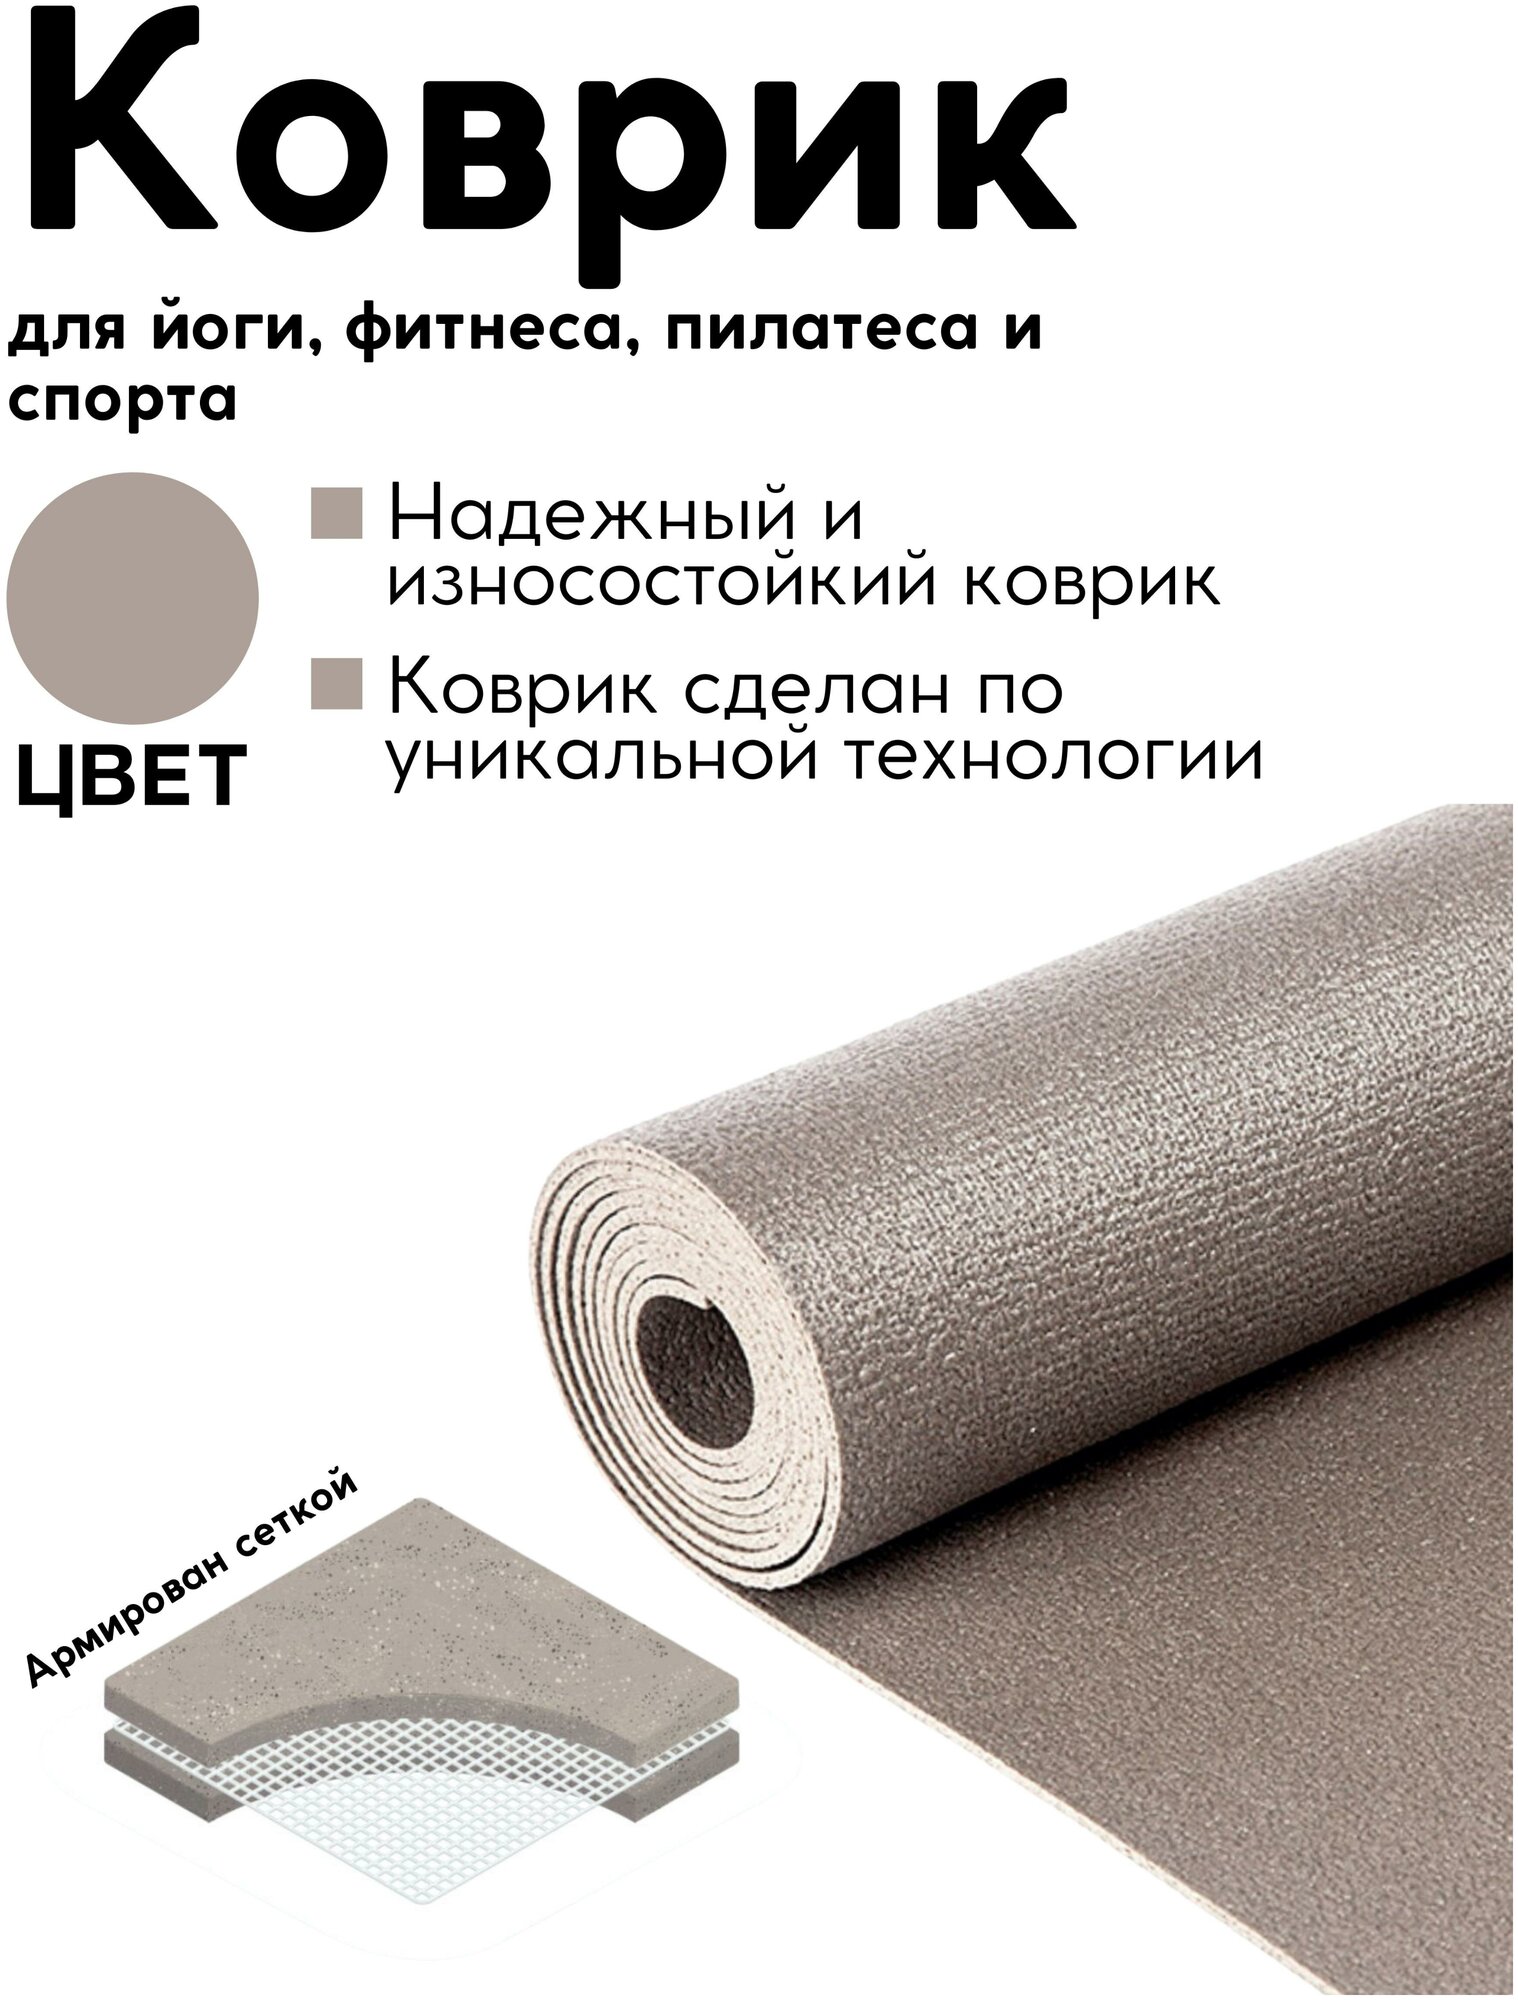 Спортивный коврик для гимнастики, фитнеса, йоги и спорта, серый, 183 х 60 х 0,4 см